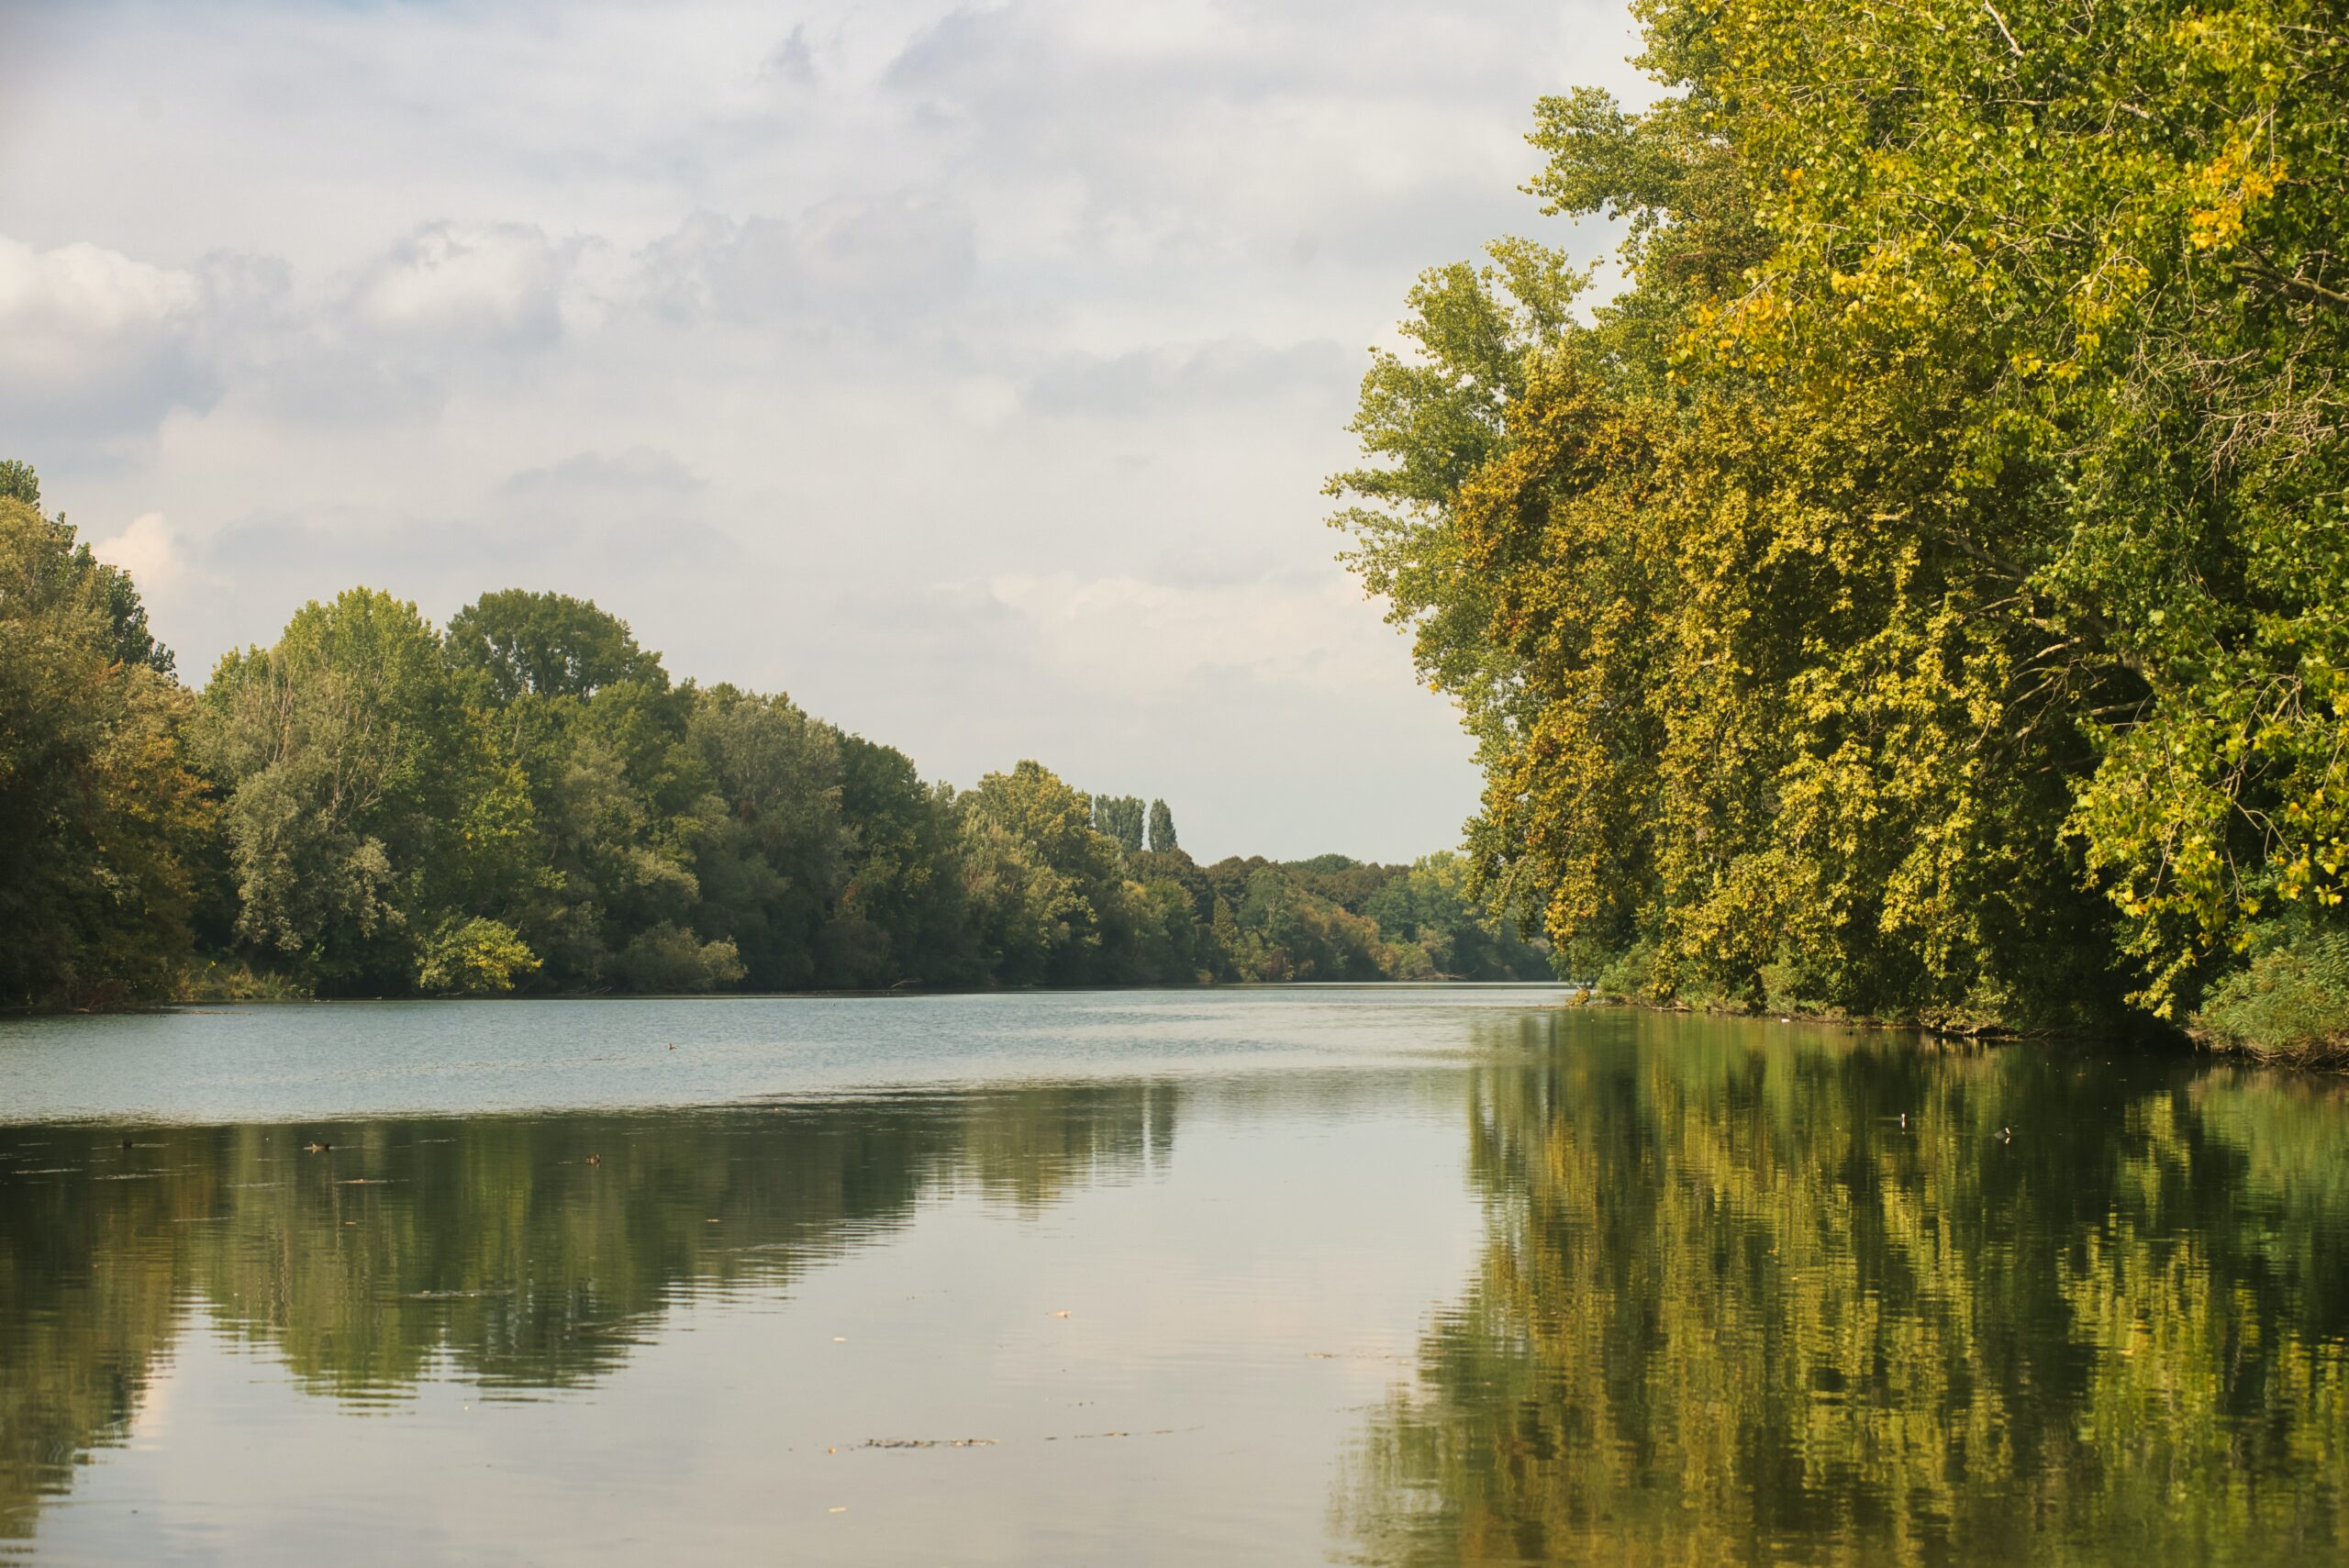 Tutelare la biodiversità fluviale è possibile attraverso il ripristino dei corsi d’acqua